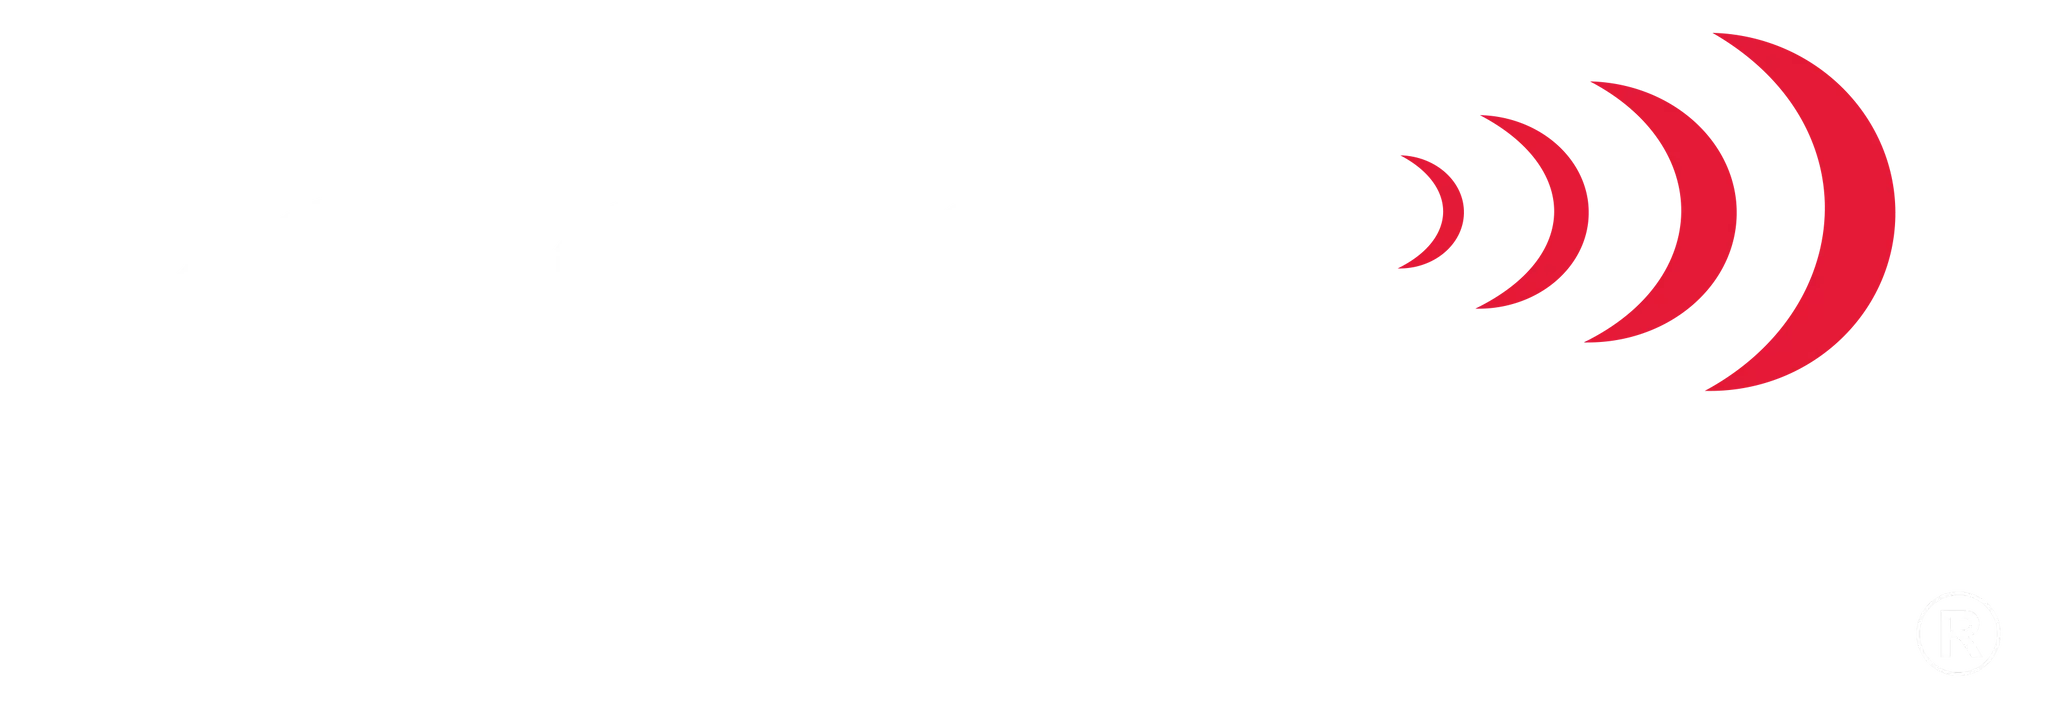 Pocket Radar